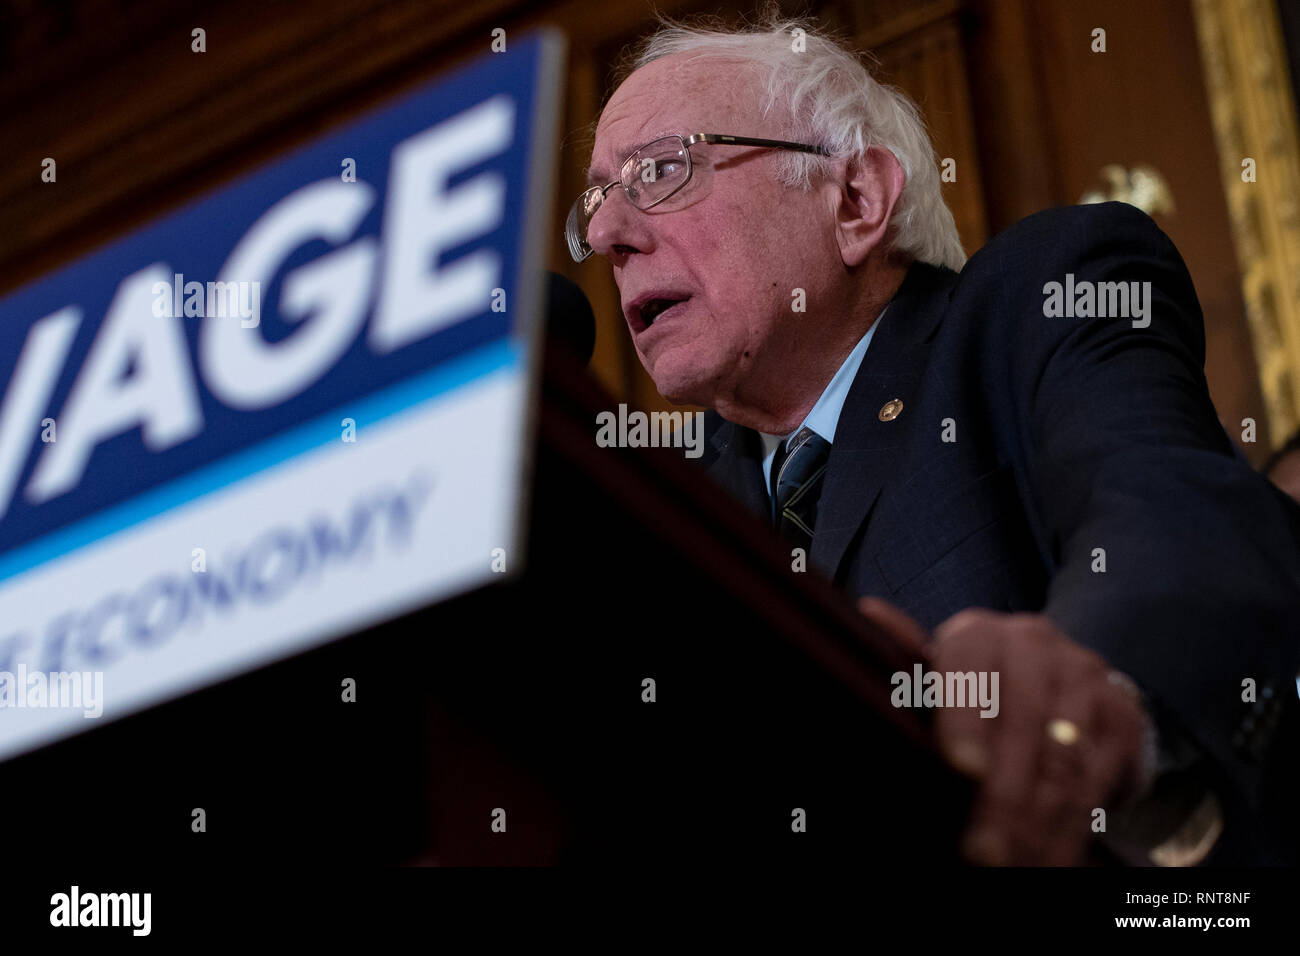 Le sénateur Bernie Sanders, indépendant du Vermont, prend la parole lors d'une conférence de presse sur la colline du Capitole à Washington, DC Le 16 janvier 2019. Banque D'Images